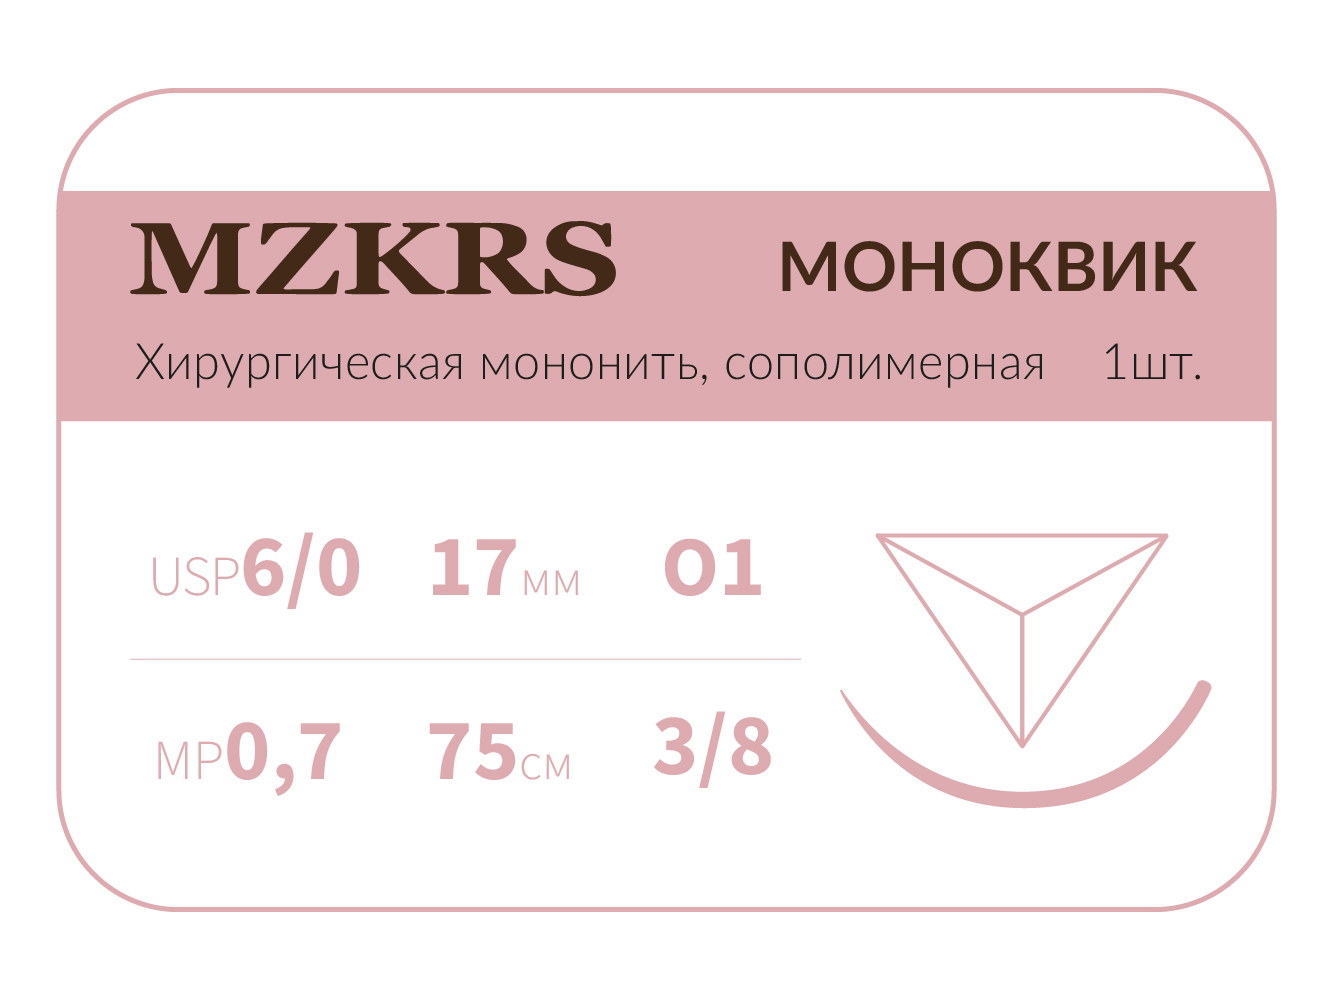 1738О1 Premium-6/0 (0,7)75 МОНК МОНОКВИК хирургическая мононить, сополимерная, MZKRS (Россия)